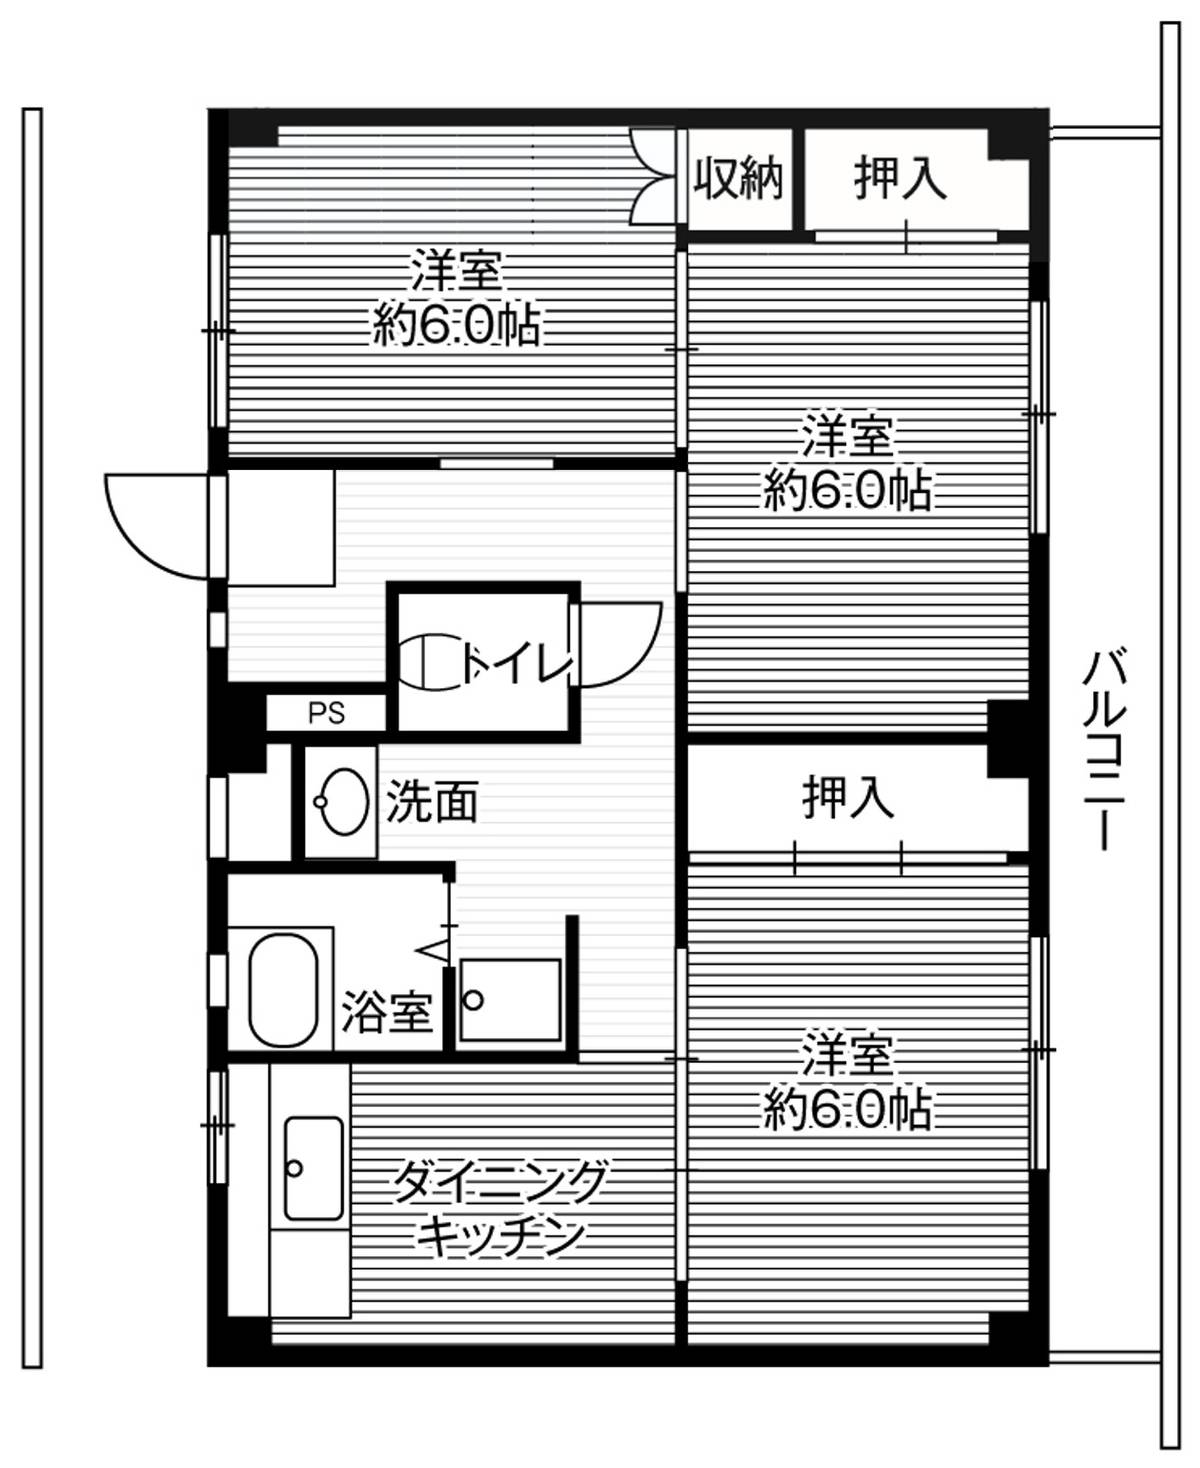 3DK floorplan of Village House Mizuhashi in Toyama-shi